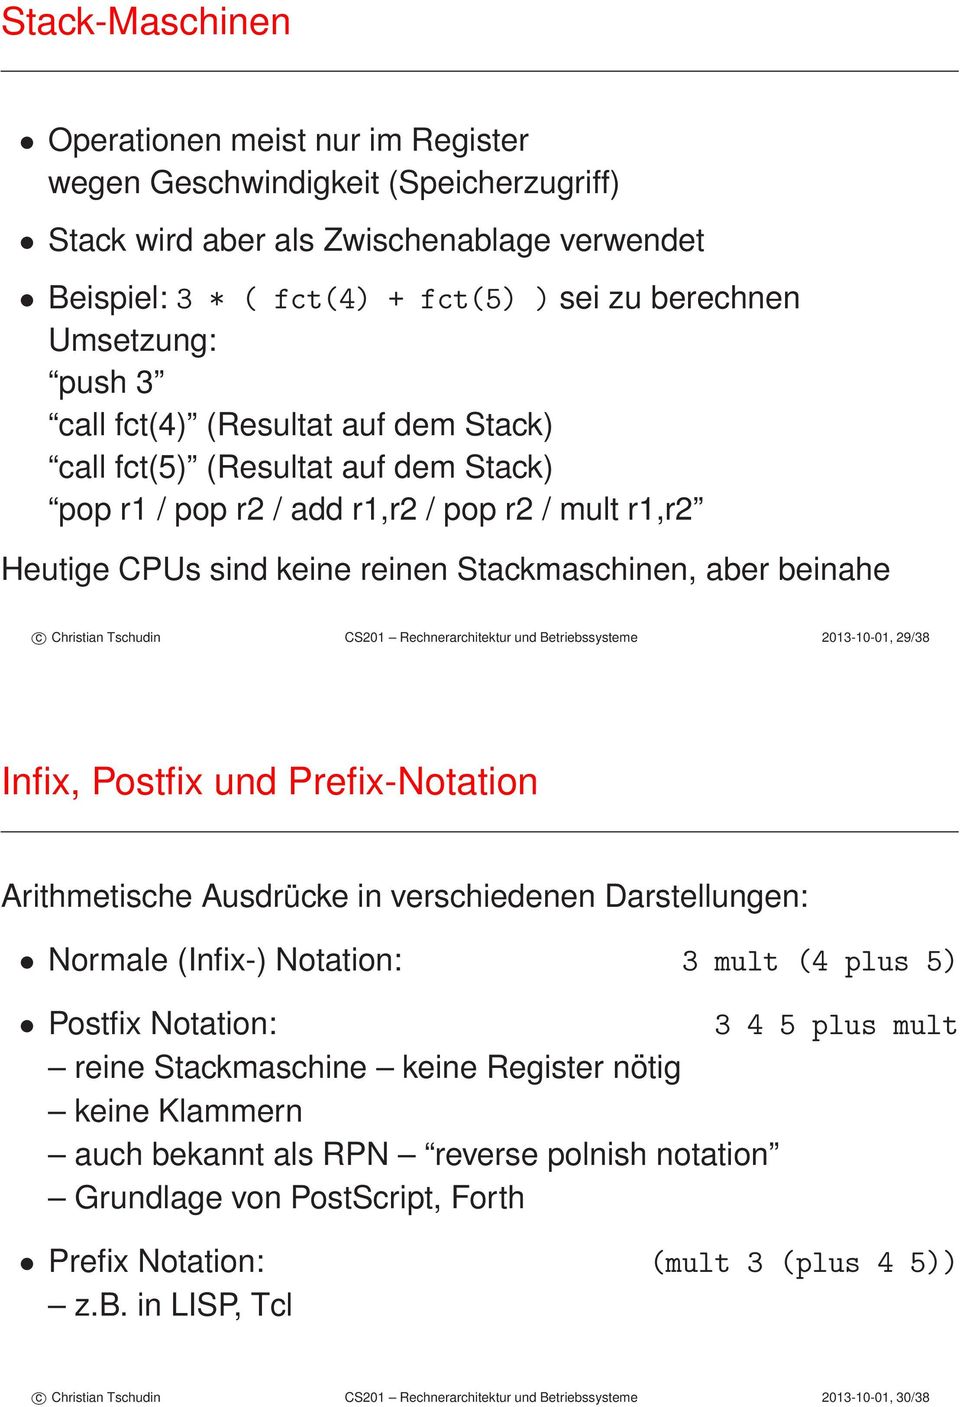 Christian Tschudin CS201 Rechnerarchitektur und Betriebssysteme 2013-10-01, 29/38 Infix, Postfix und Prefix-Notation Arithmetische Ausdrücke in verschiedenen Darstellungen: Normale (Infix-) Notation: